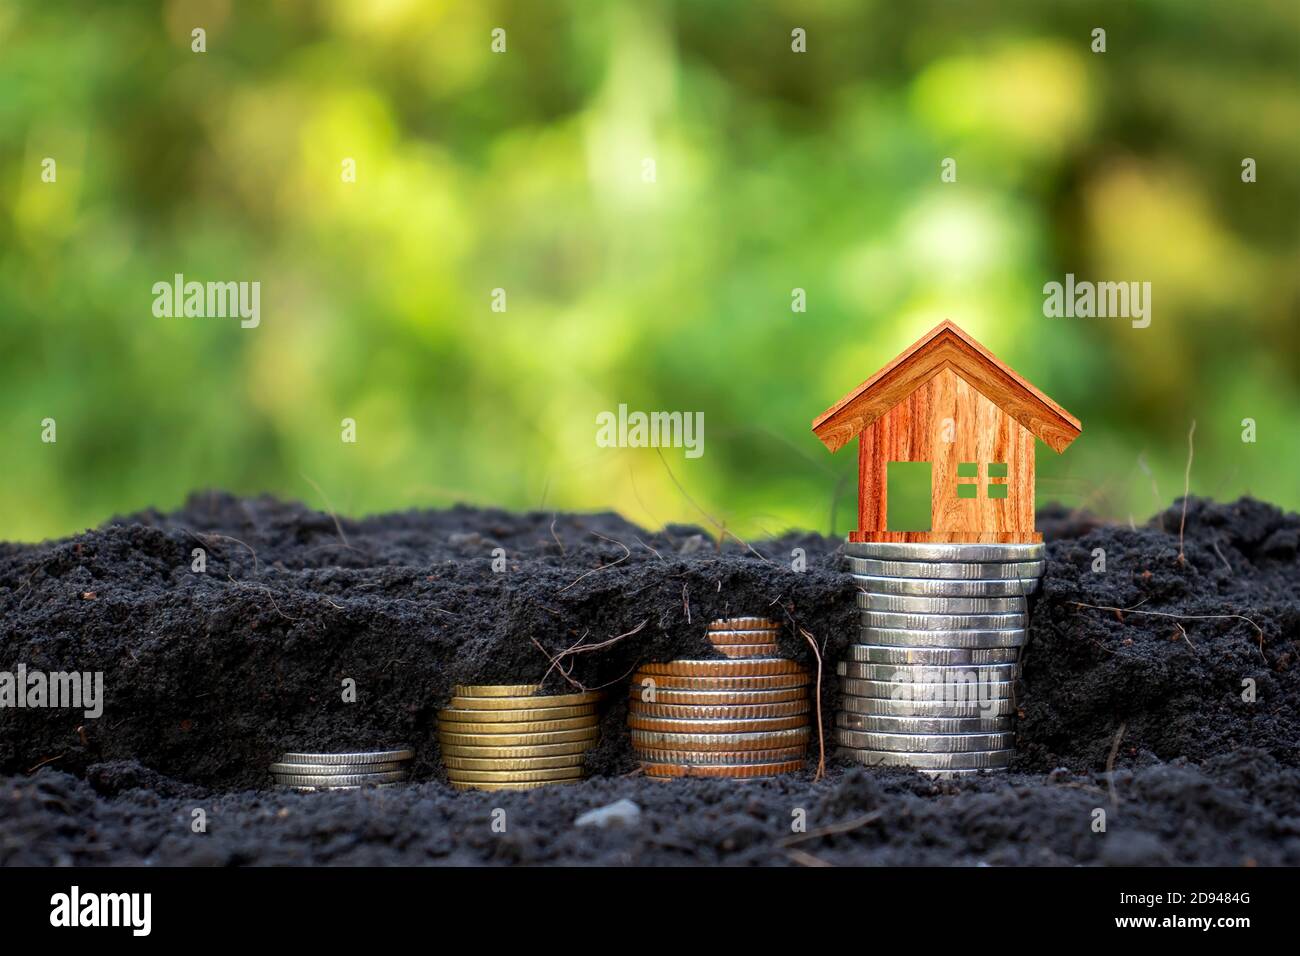 El modelo de la casa de madera en la moneda contiene monedas que crecen en el suelo con el concepto de ahorro de dinero, fondo verde de la naturaleza. Foto de stock